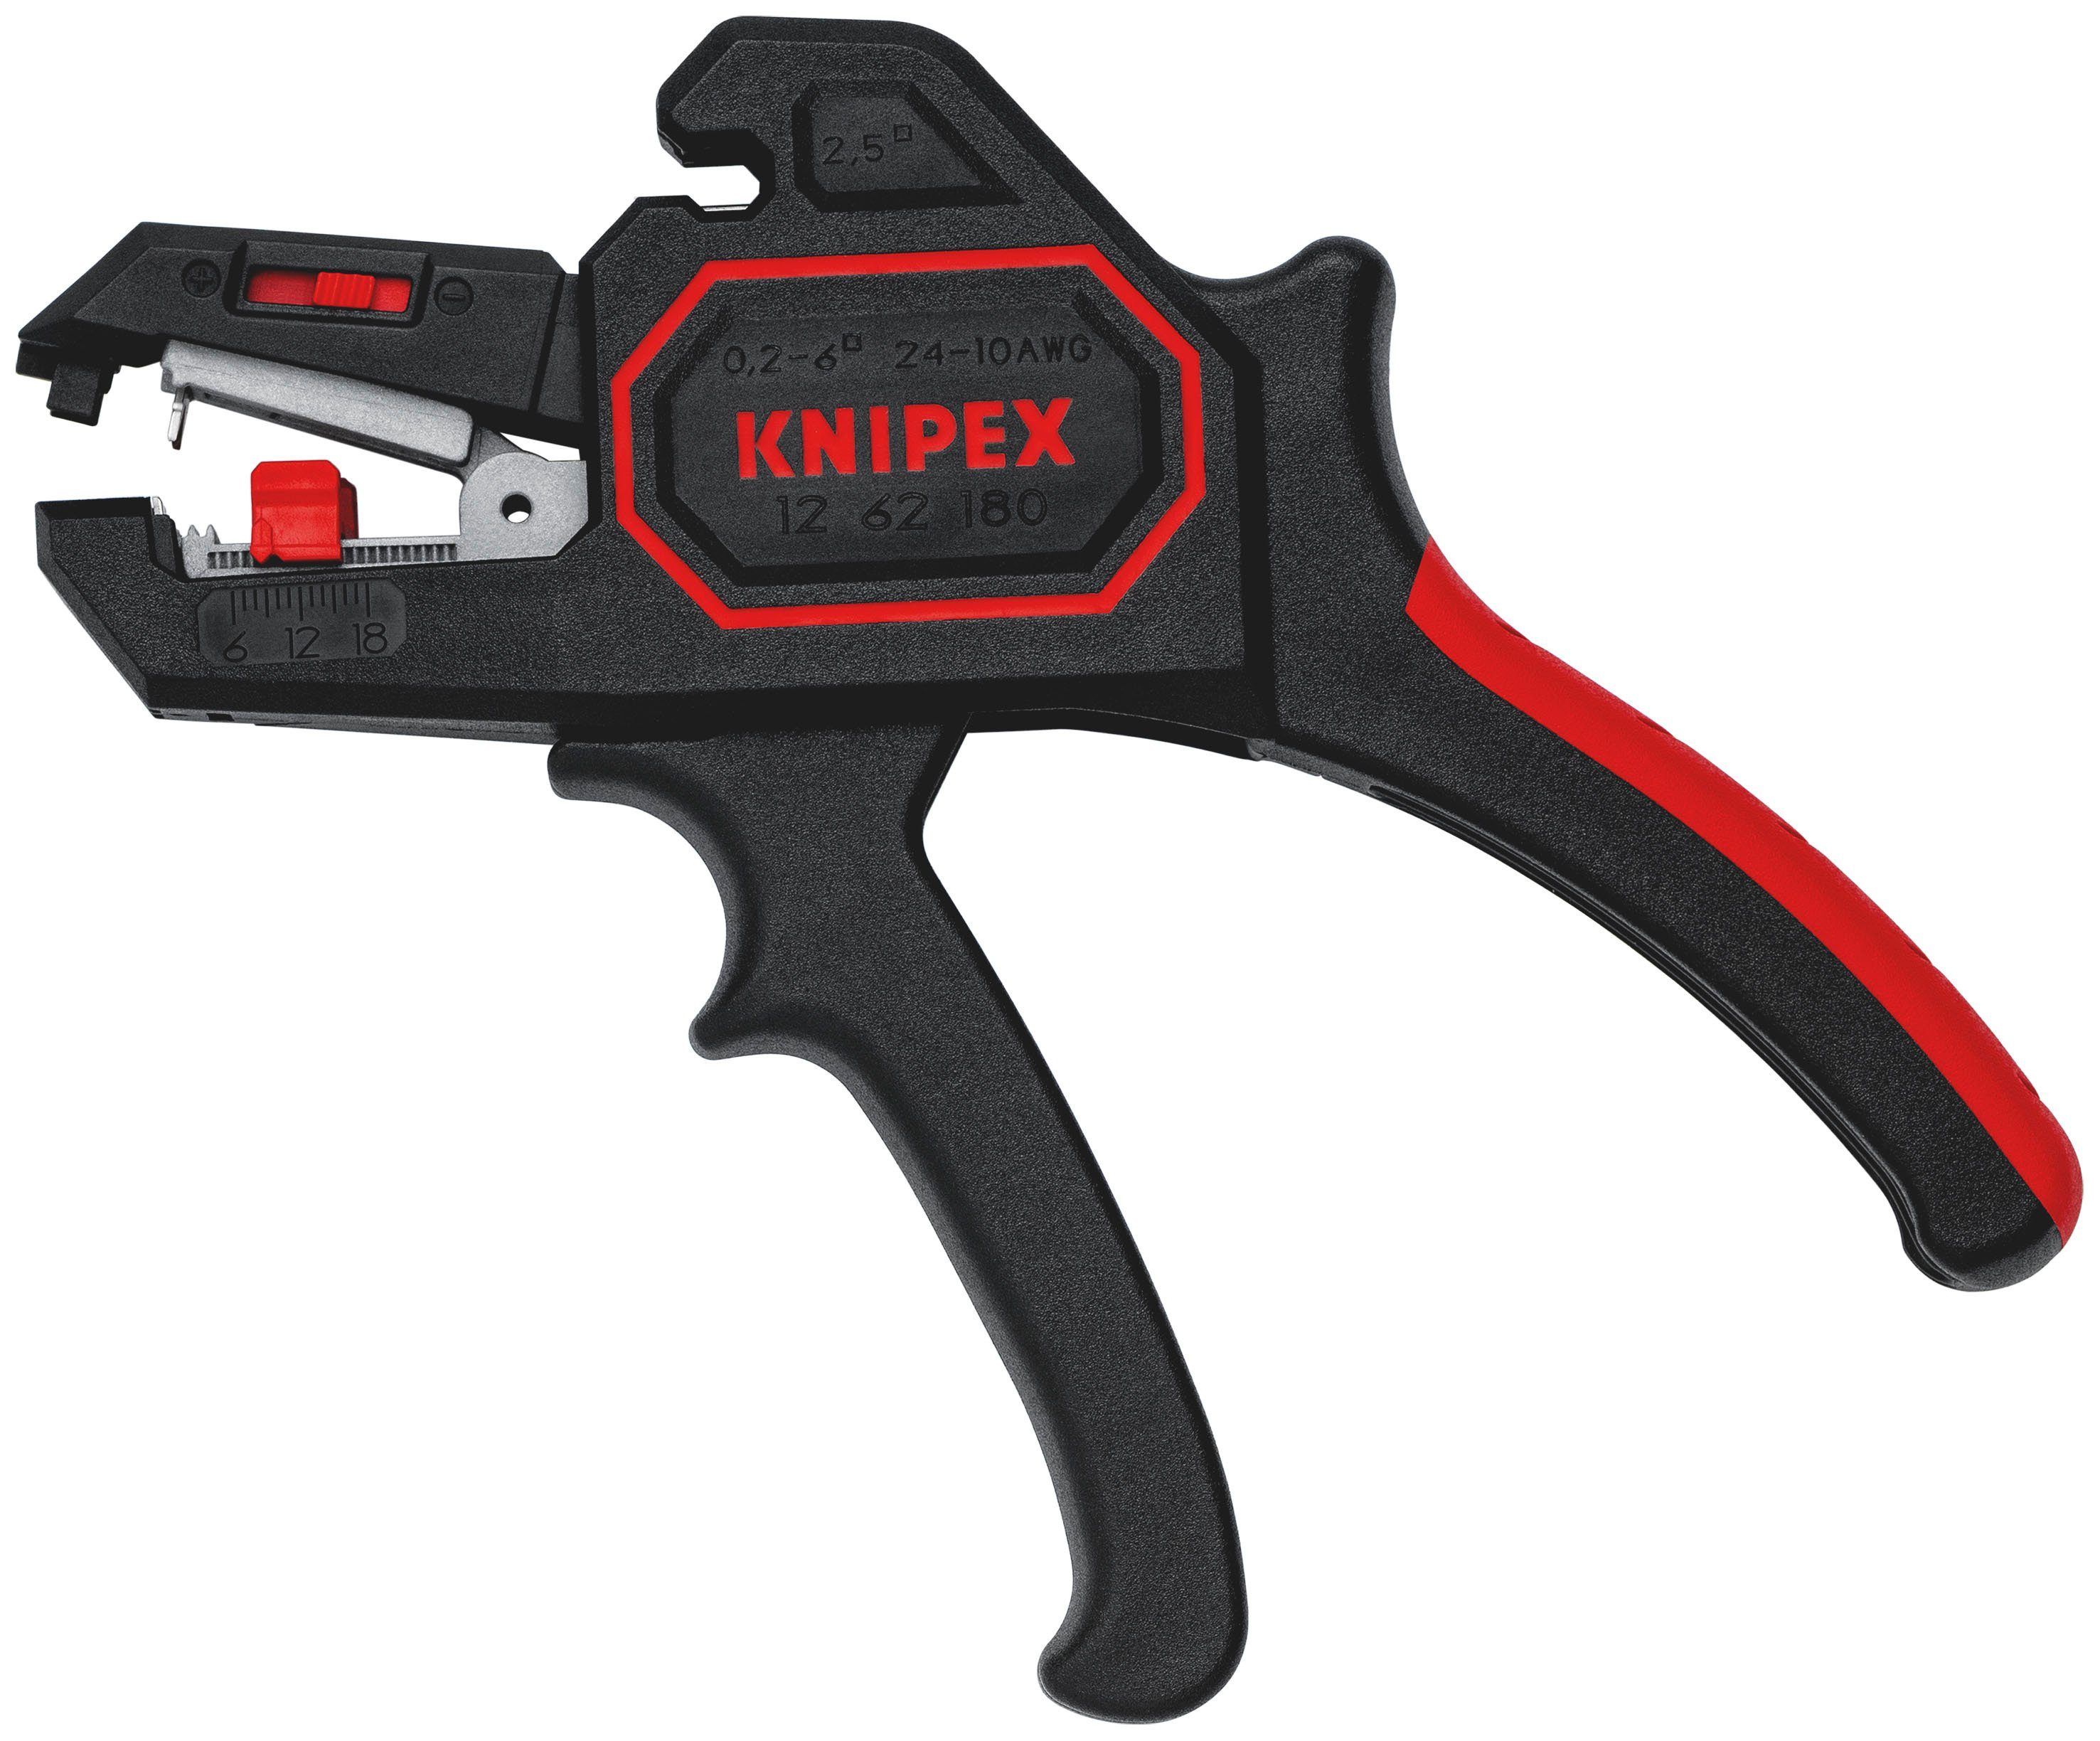 Knipex Abisolierzange 12 62 180, 1-tlg., automatisch, 180 mm | Zangen